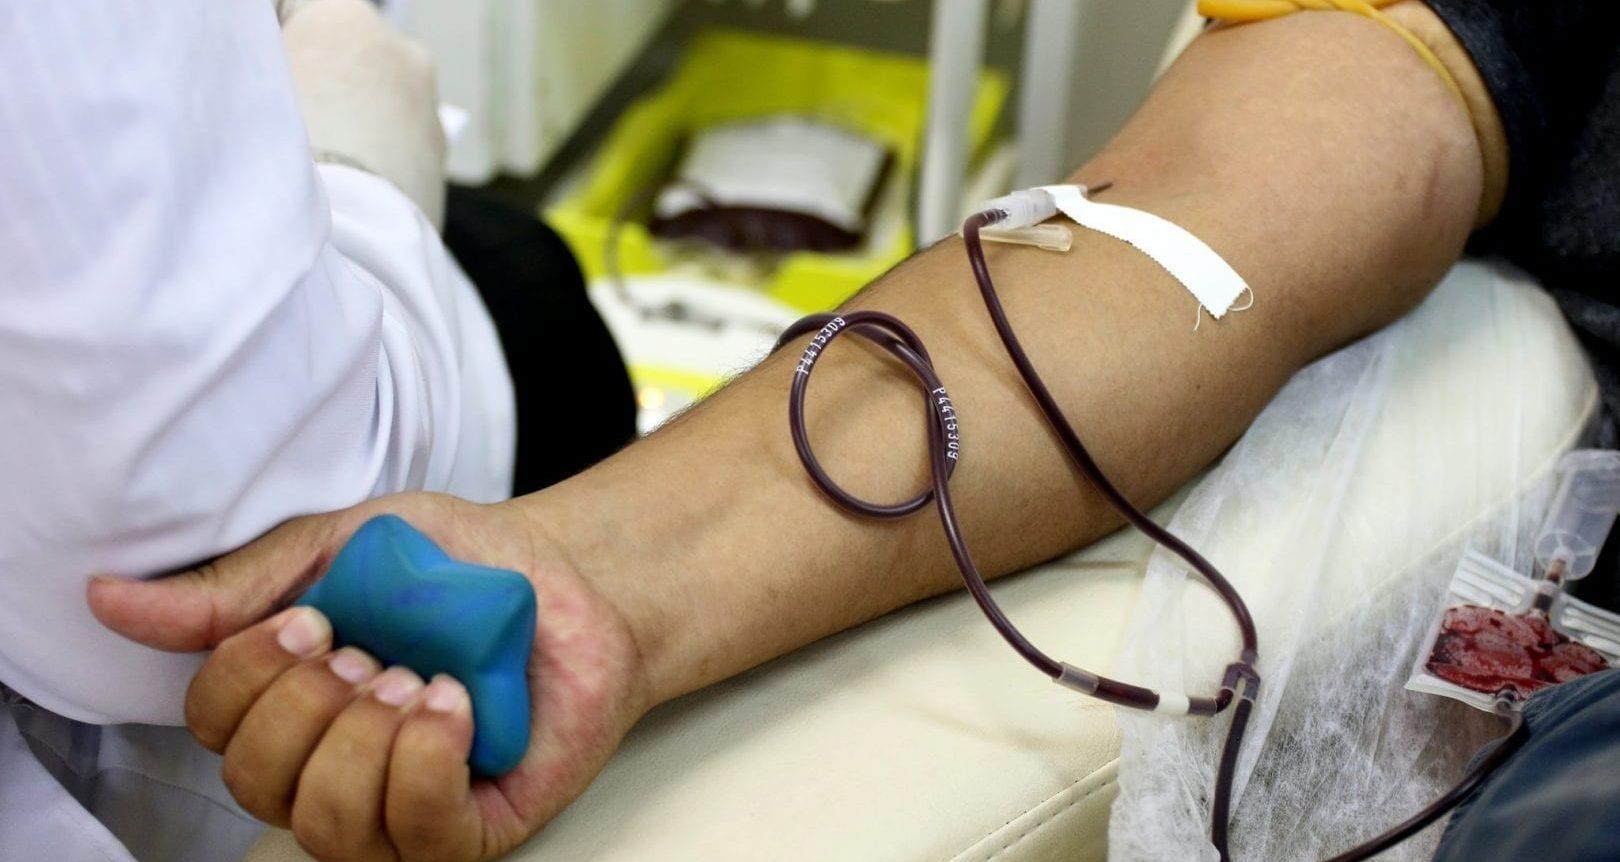 Moradores de Goiânia podem doar sangue em casa; veja como agendar 